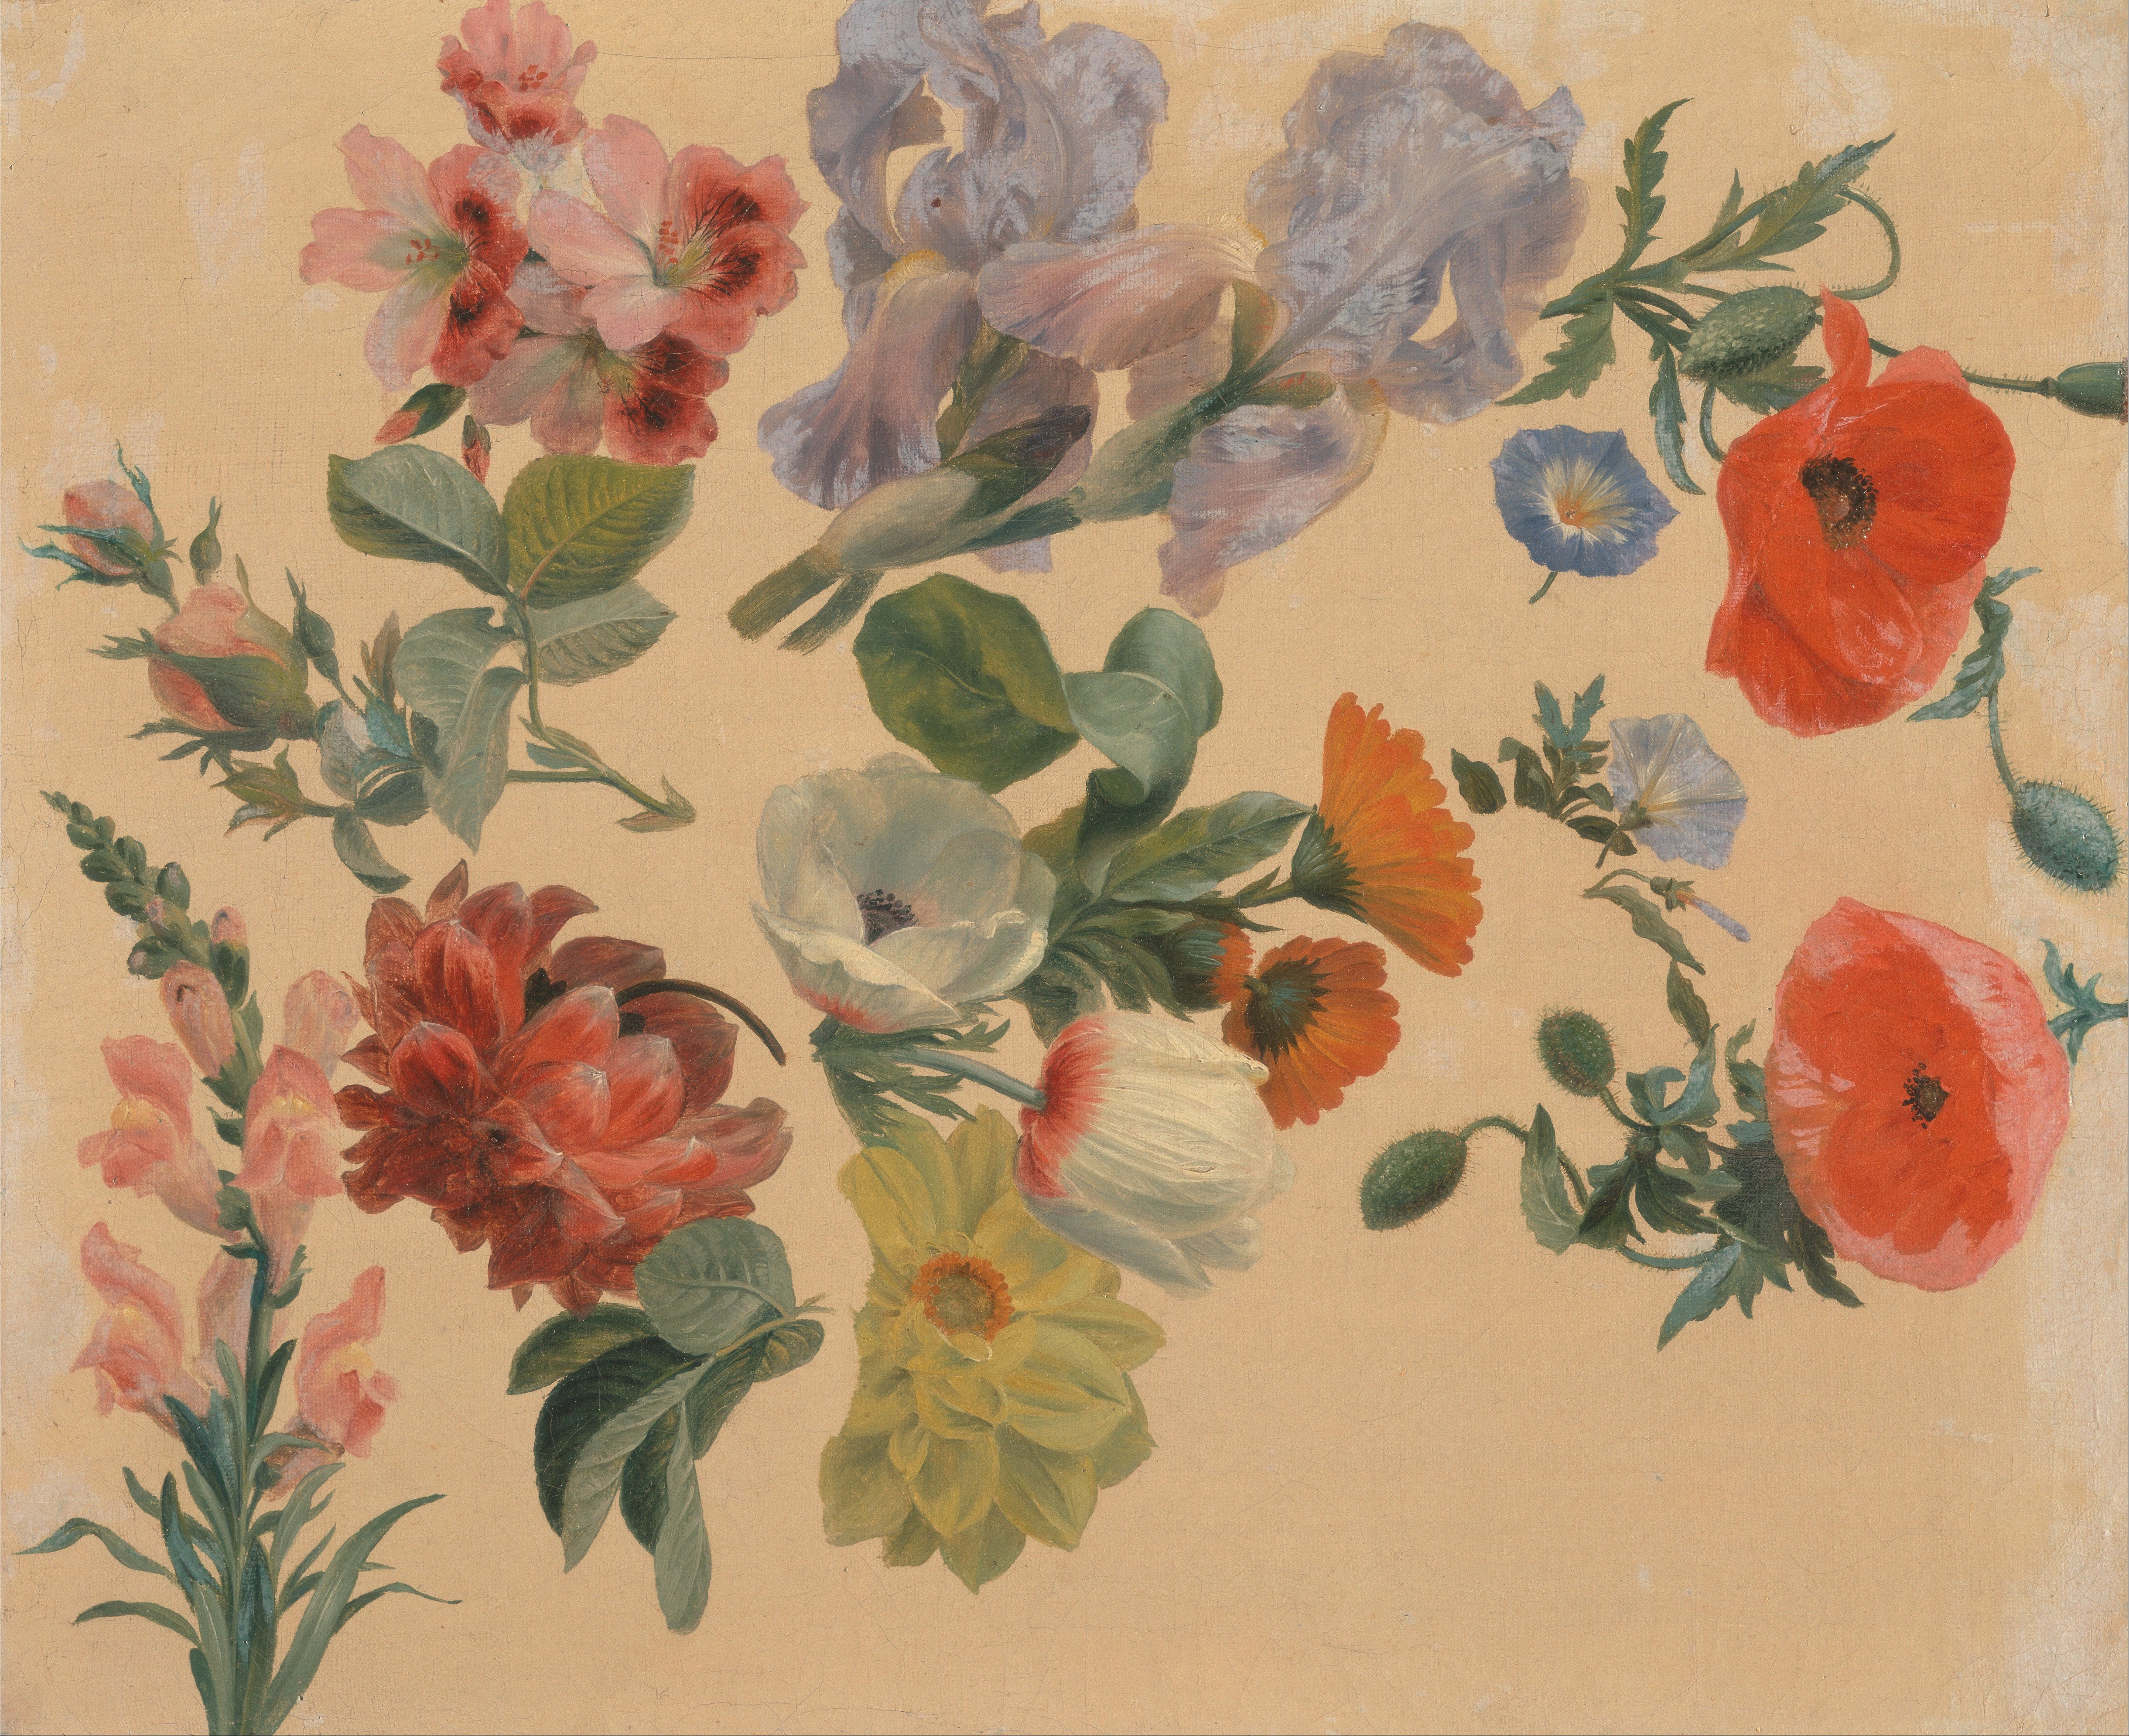 Jacques-Laurent Agasse - Studies of Summer Flowers - Google Art Project